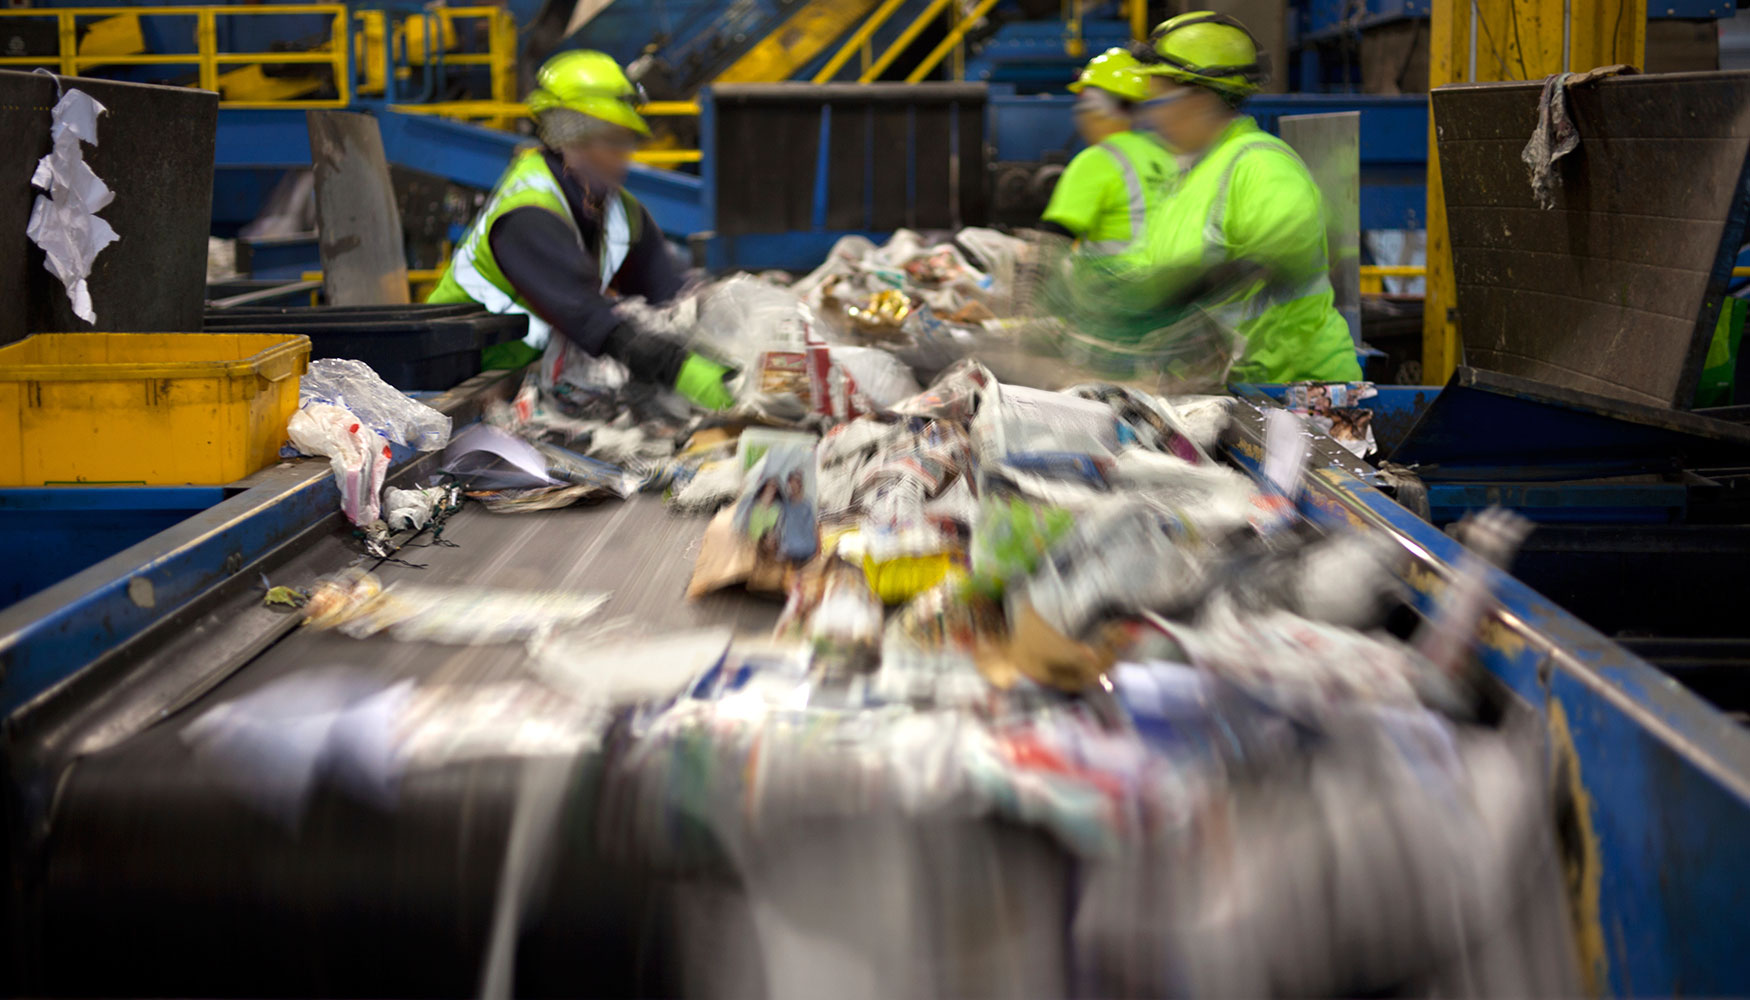 Las empresas gestoras recogieron 22,5 toneladas de residuos domsticos generados por hogares, comercio y servicios...